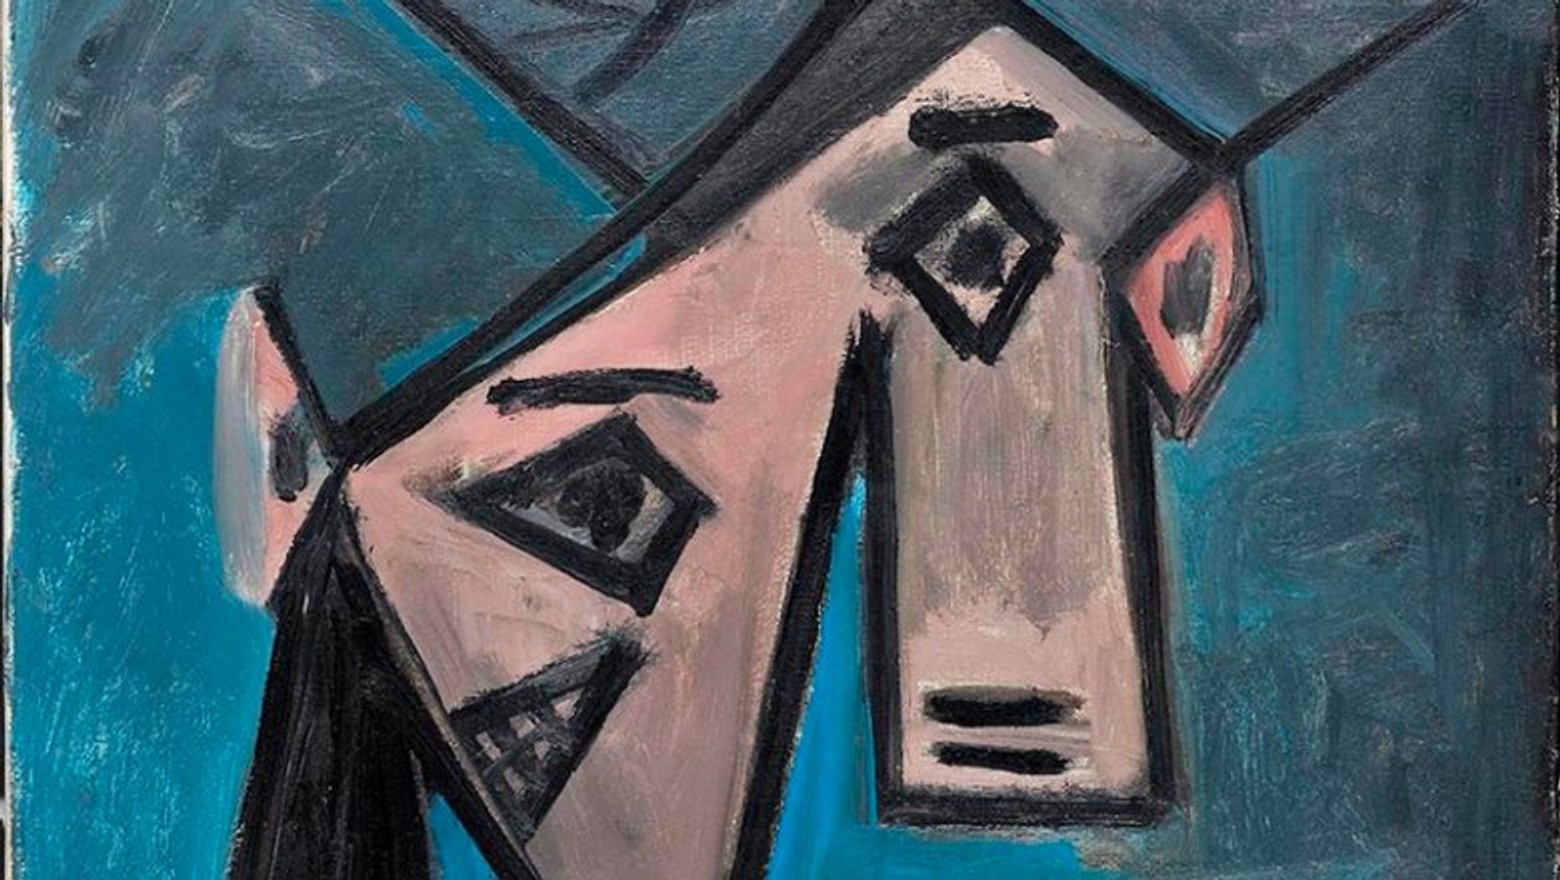 Поліція Греції знайшла викрадені майже 10 років тому картини Пікассо і Мондріана. Викрадення «Голови жінки» називали крадіжкою століття